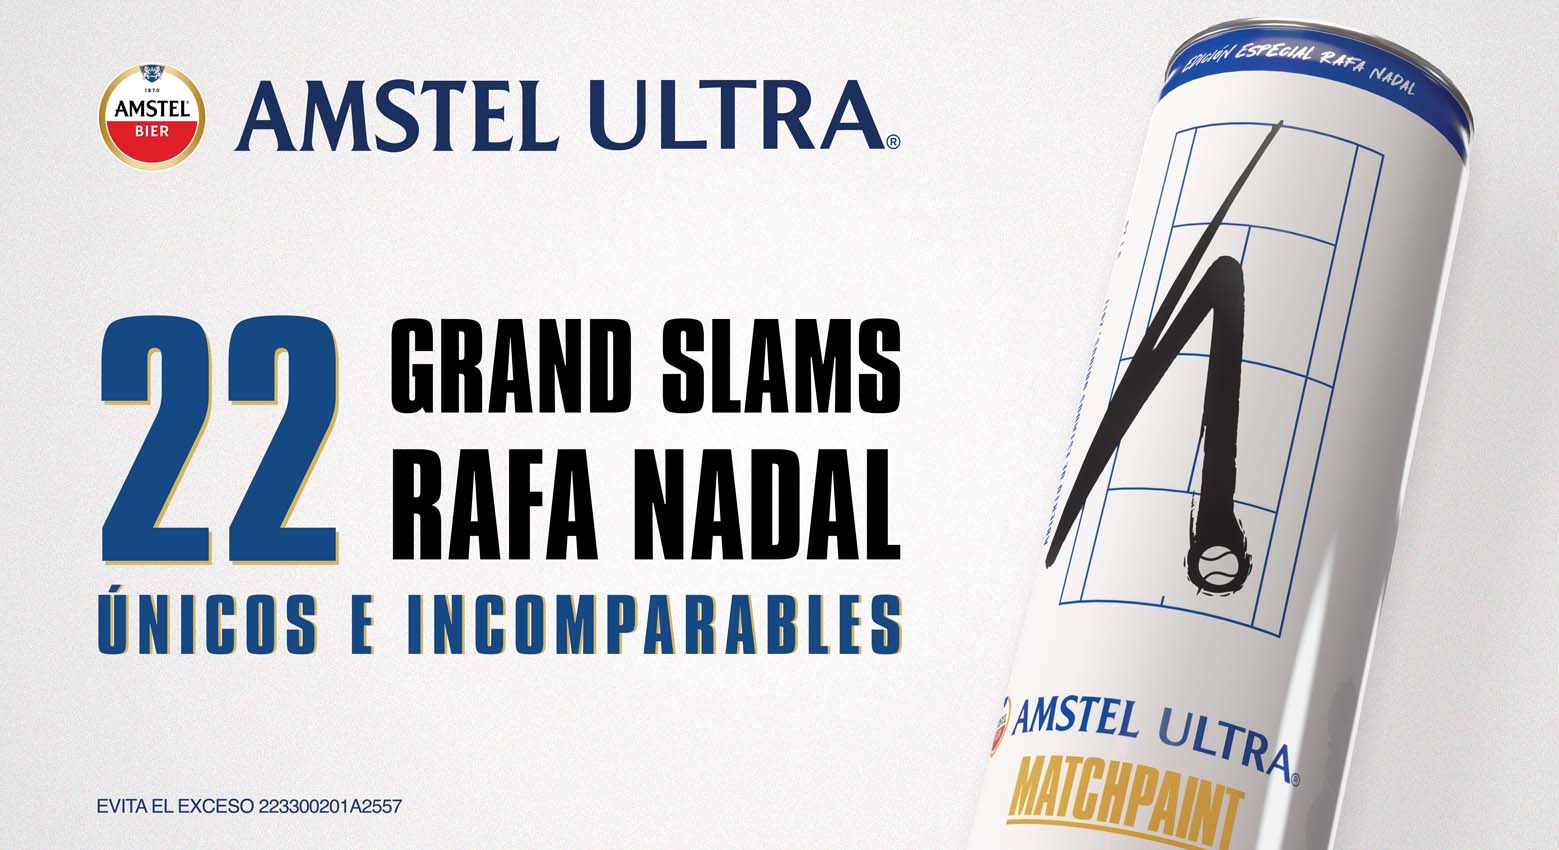 Amstel Ultra rinde homenaje a Rafa Nadal 0